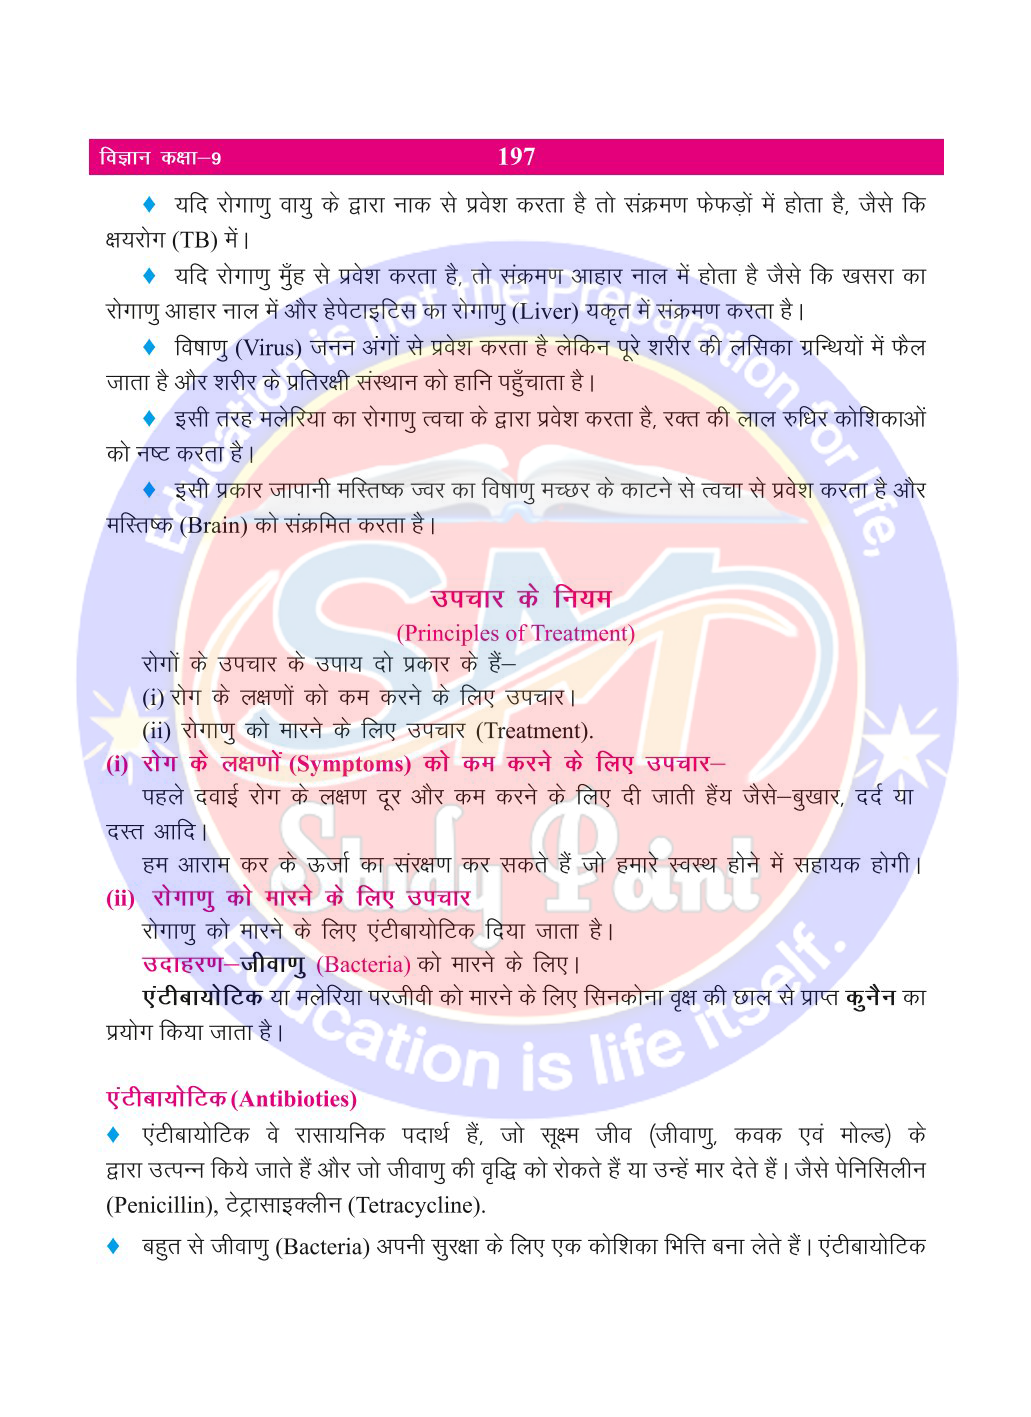 Bihar Board Class 9th Biology  Why do we get sick  Class 9 Biology Rivision Notes PDF  हम बीमार क्यों होते है   बिहार बोर्ड क्लास 9वीं जीवविज्ञान नोट्स  कक्षा 9 जीवविज्ञान हिंदी में नोट्स